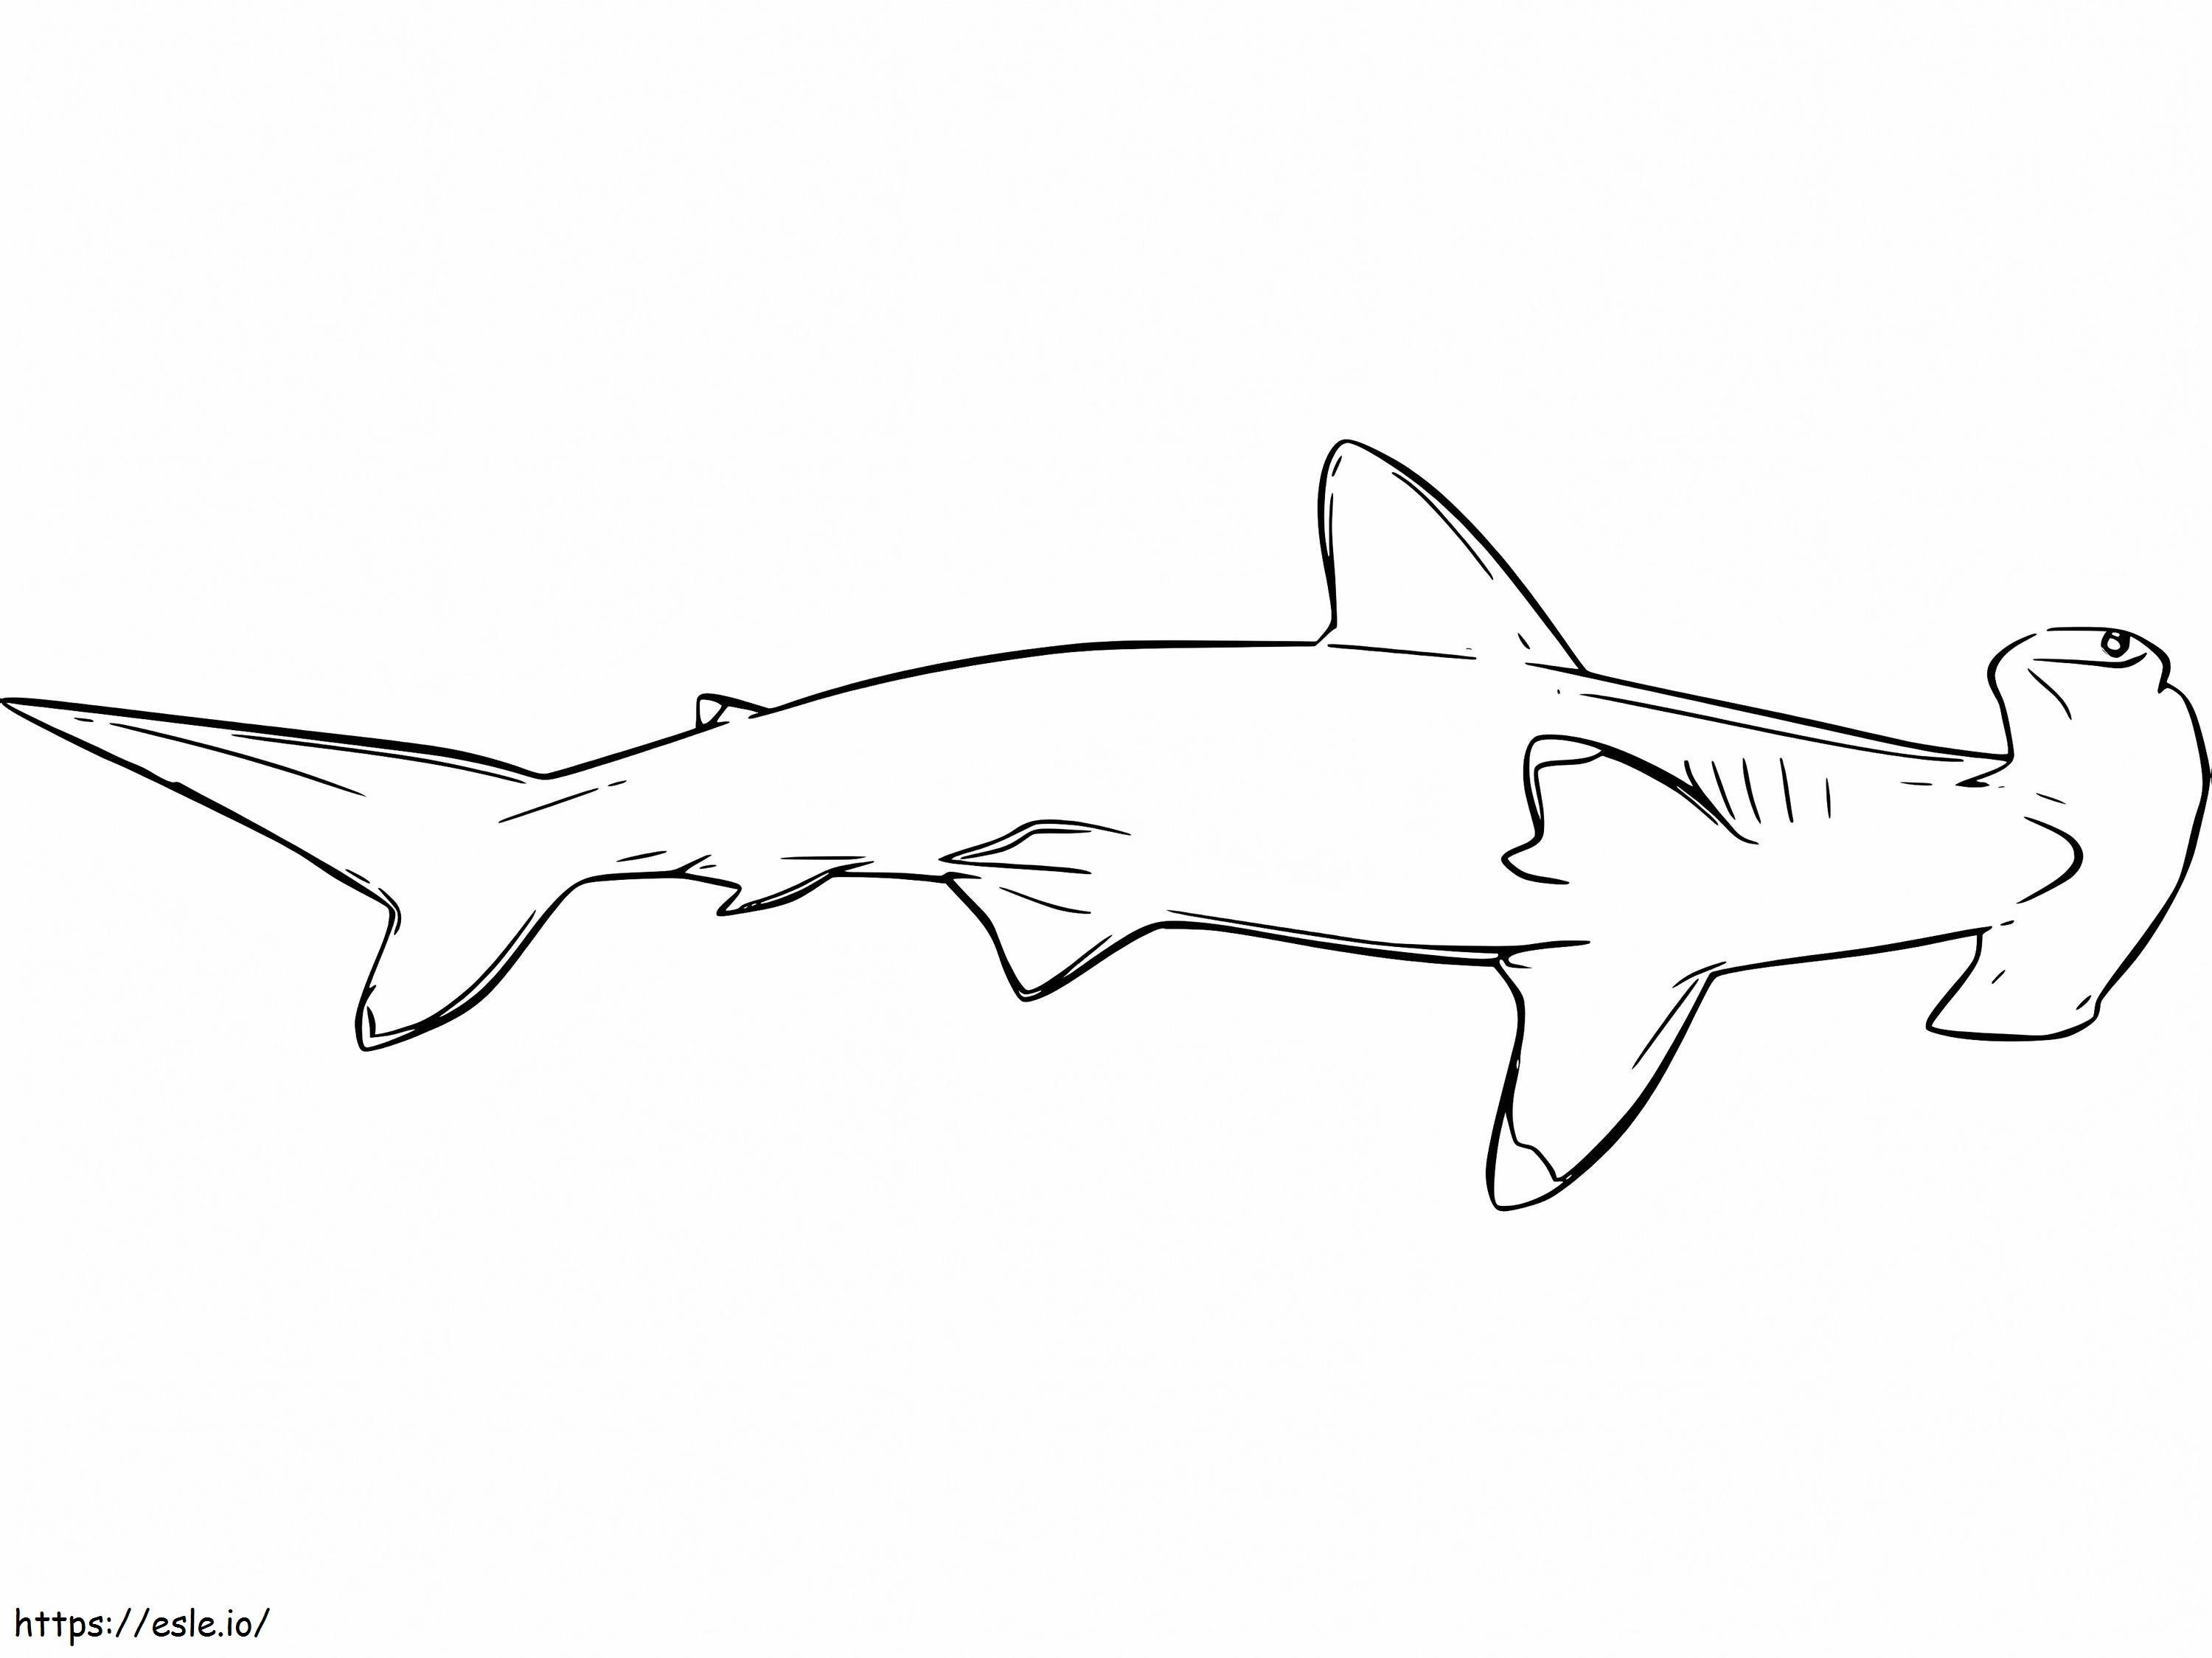 Çekiçbaş Köpekbalığı 6 boyama